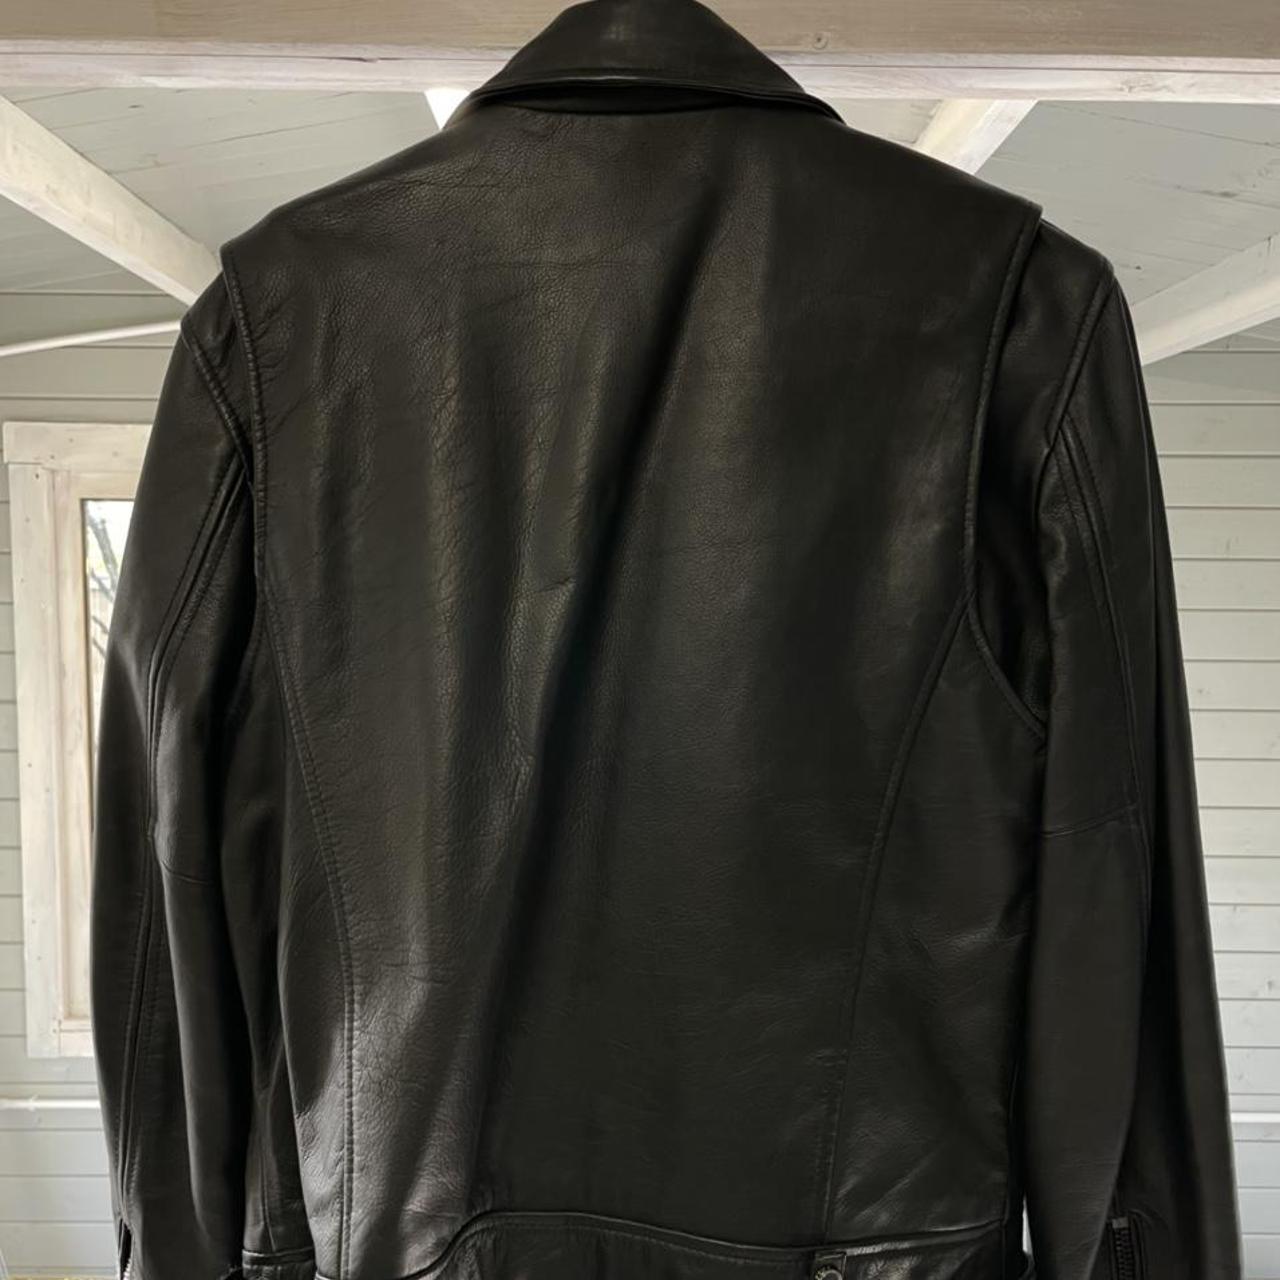 BODA SKINS - leather biker jacket size XXL (wears... - Depop